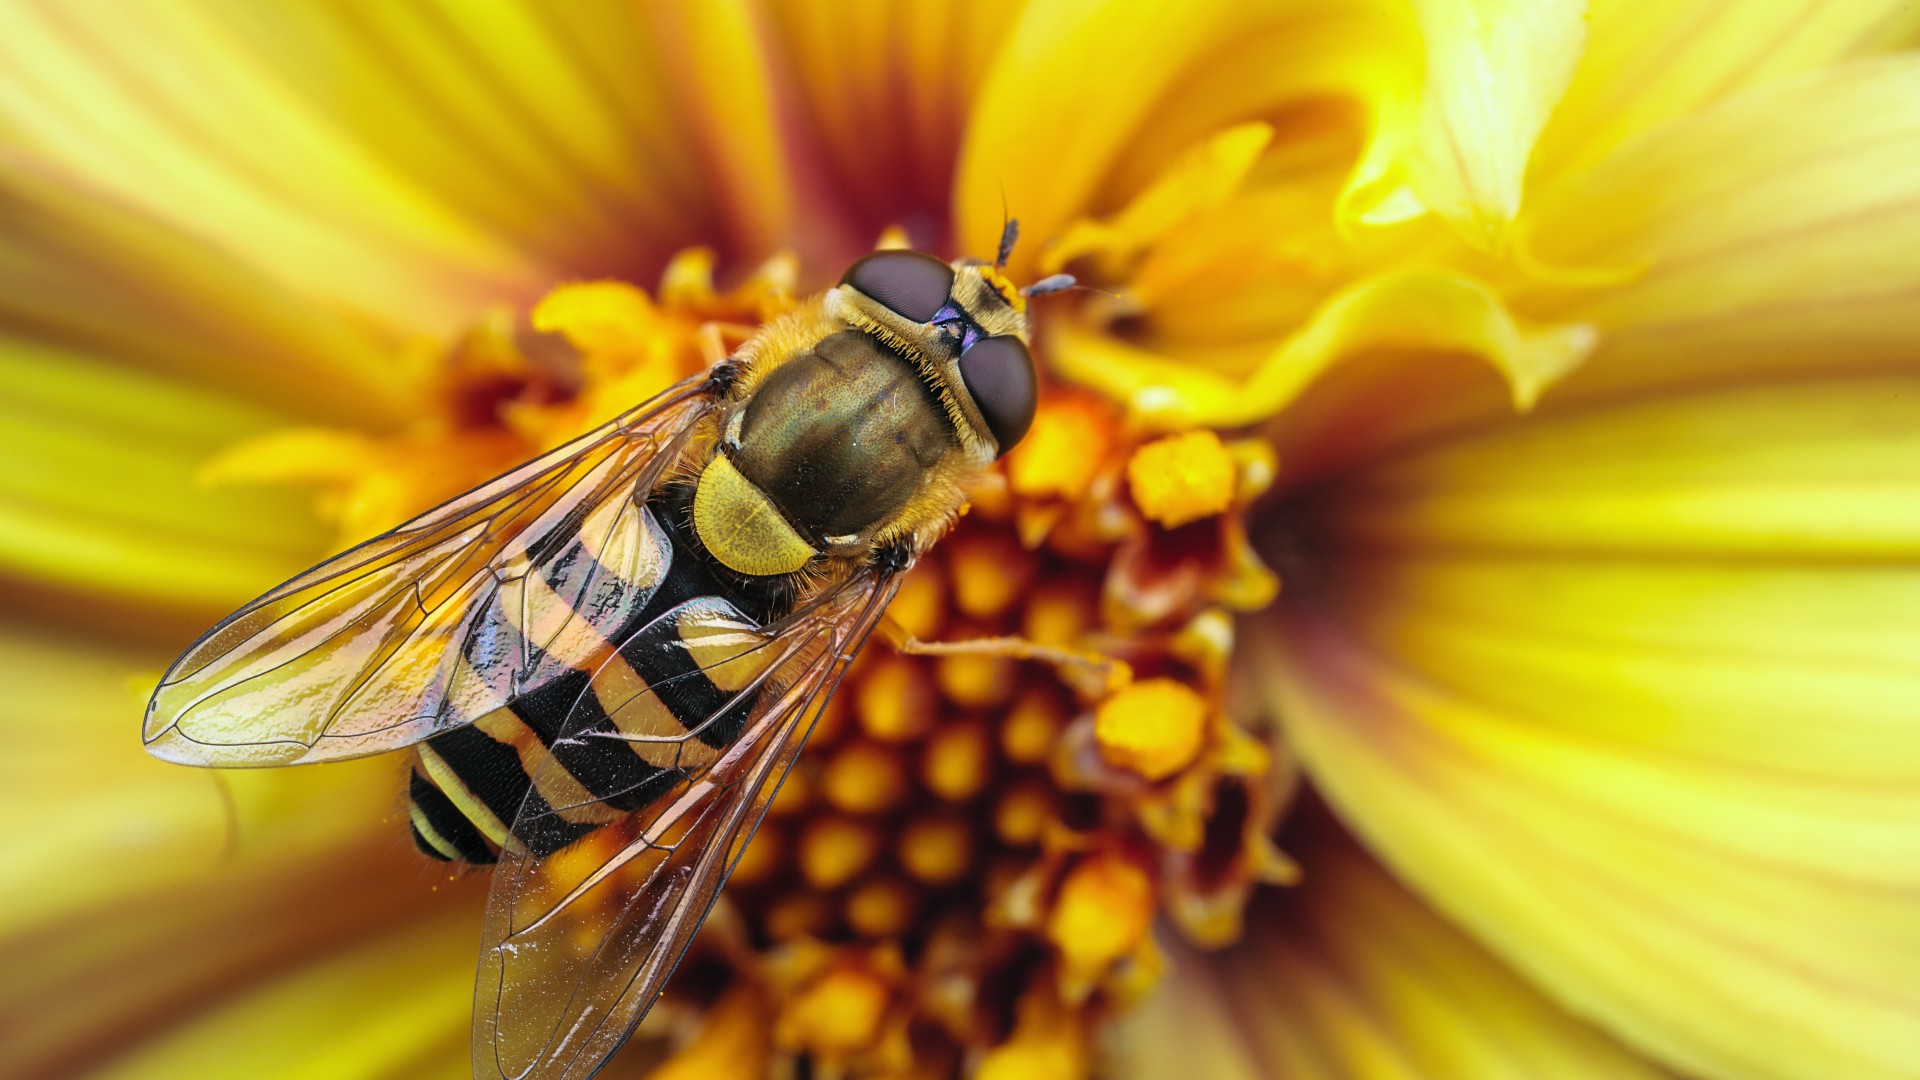 пчела, оса, цветок, нектар, желтый, крылья, макро, насекомые, Bee, wasp, flower, yellow, wings, macro, stripes, insects (horizontal)